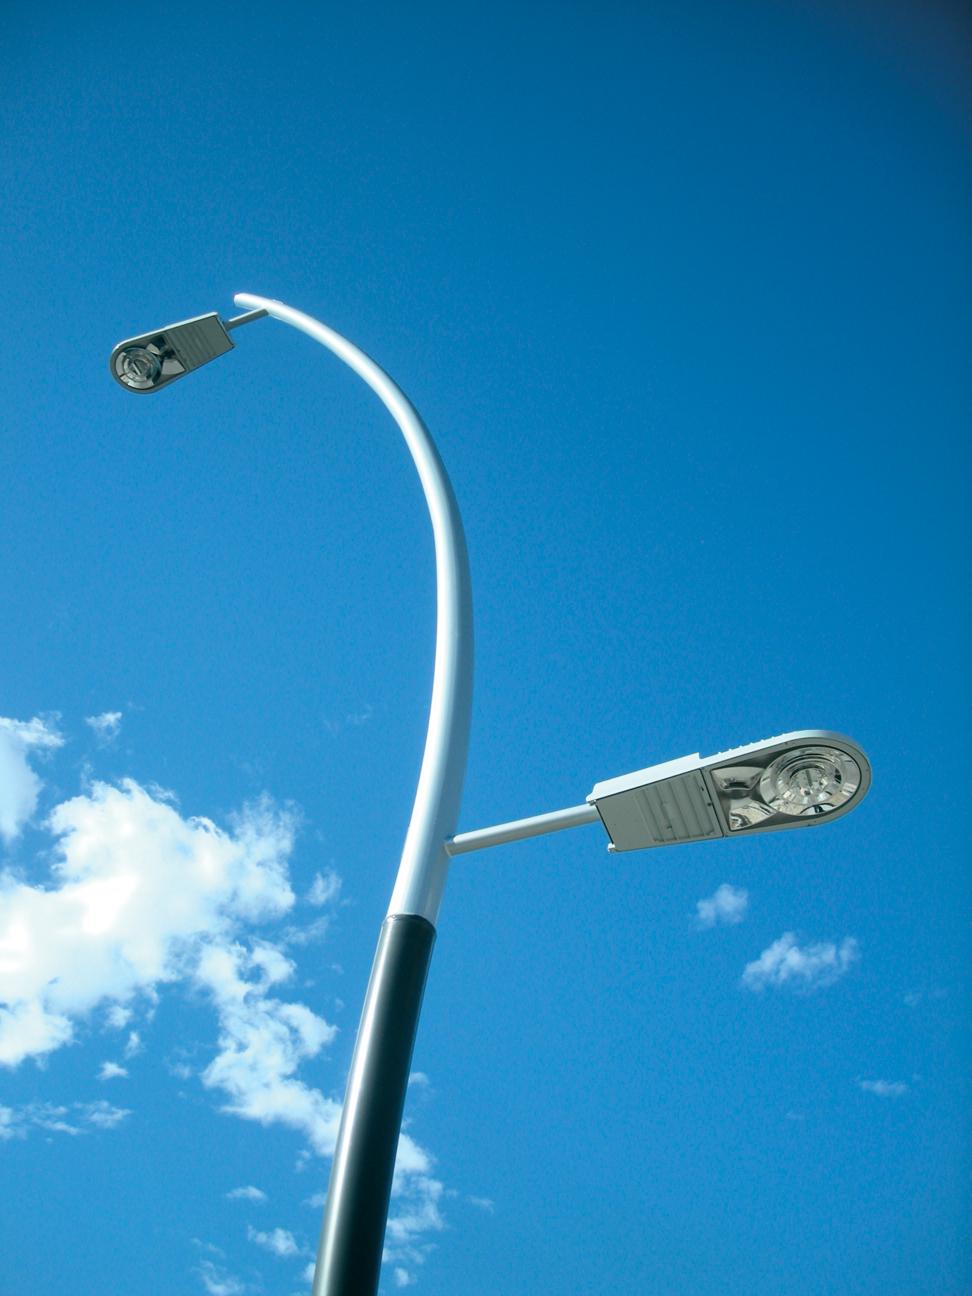 LED streetlights